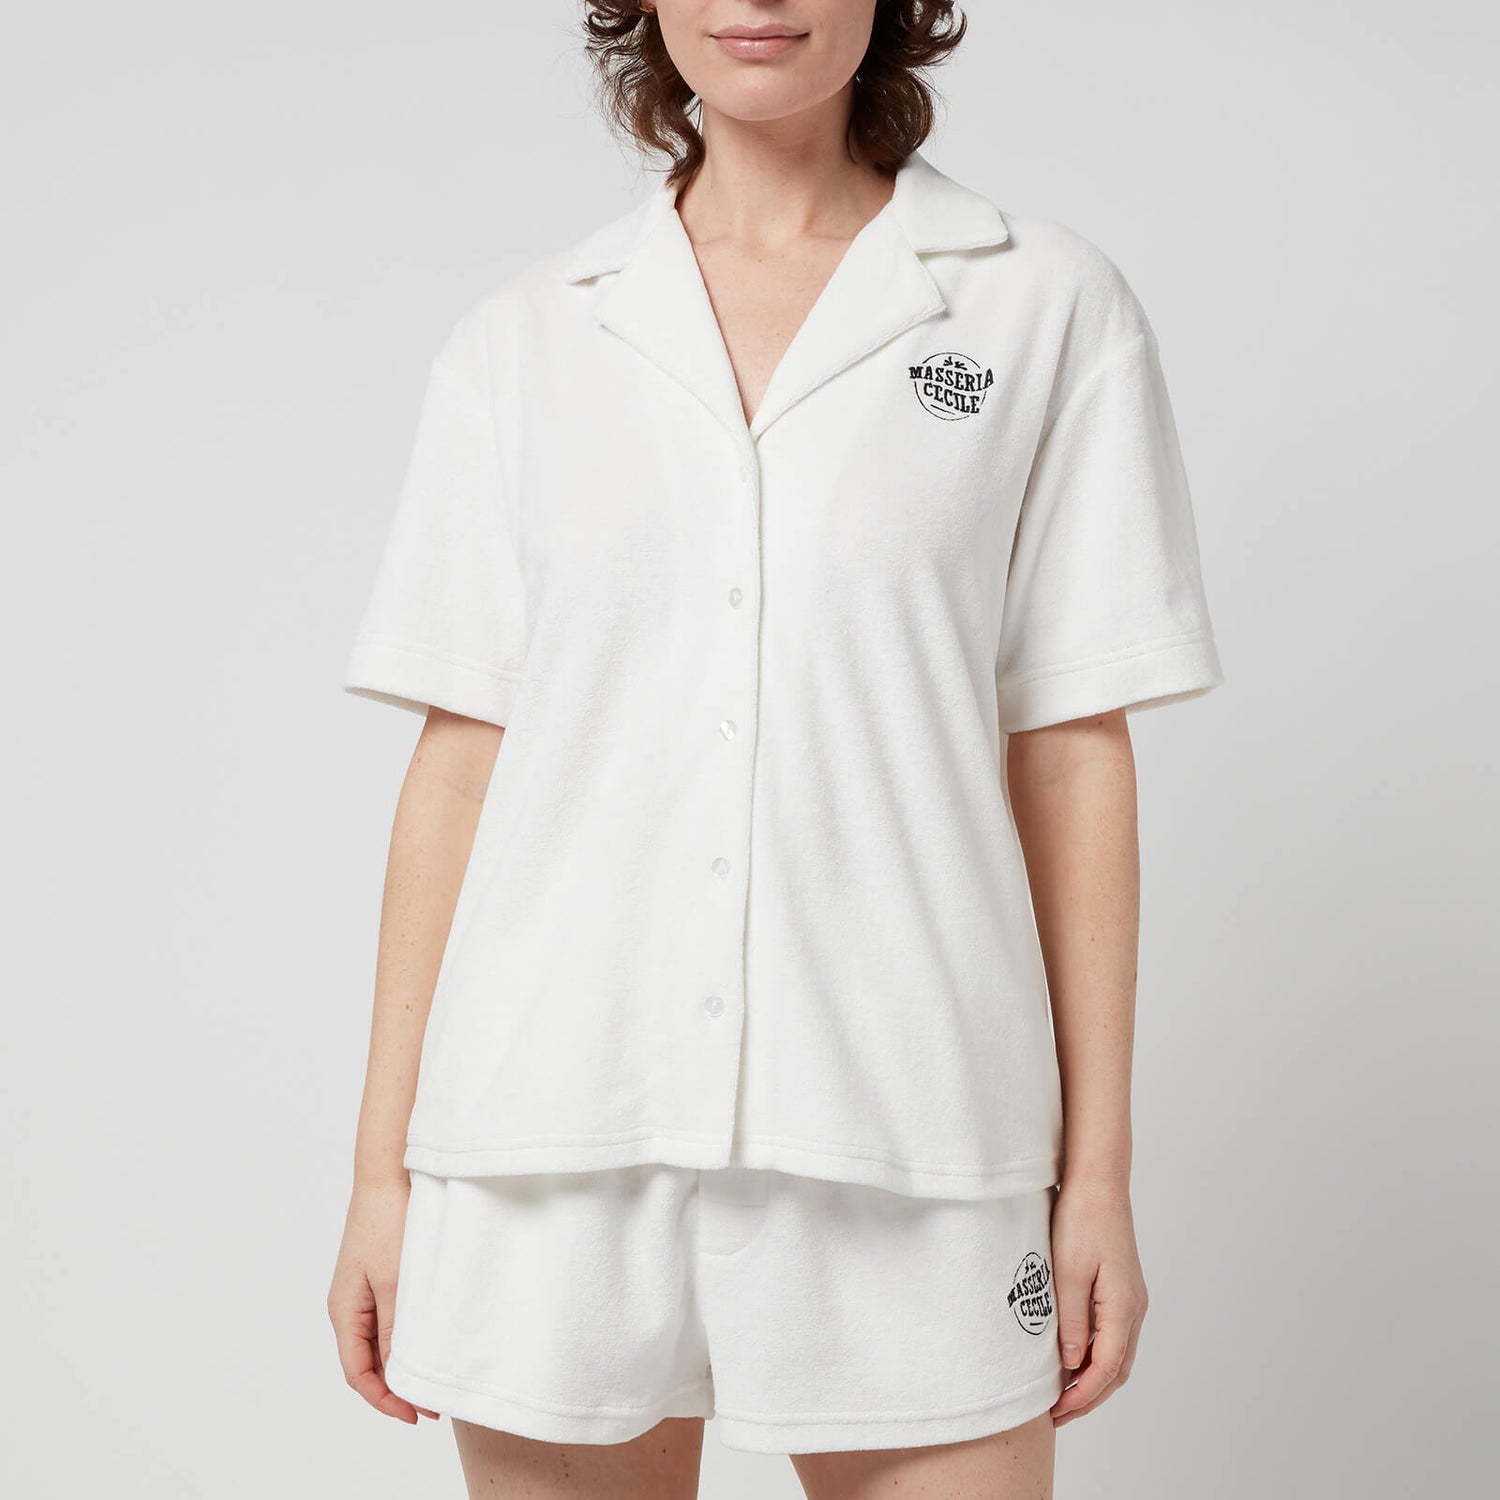 Être Cécile Women's Andy C Singer Towelling Short Sleeve Shirt - Ivory - L